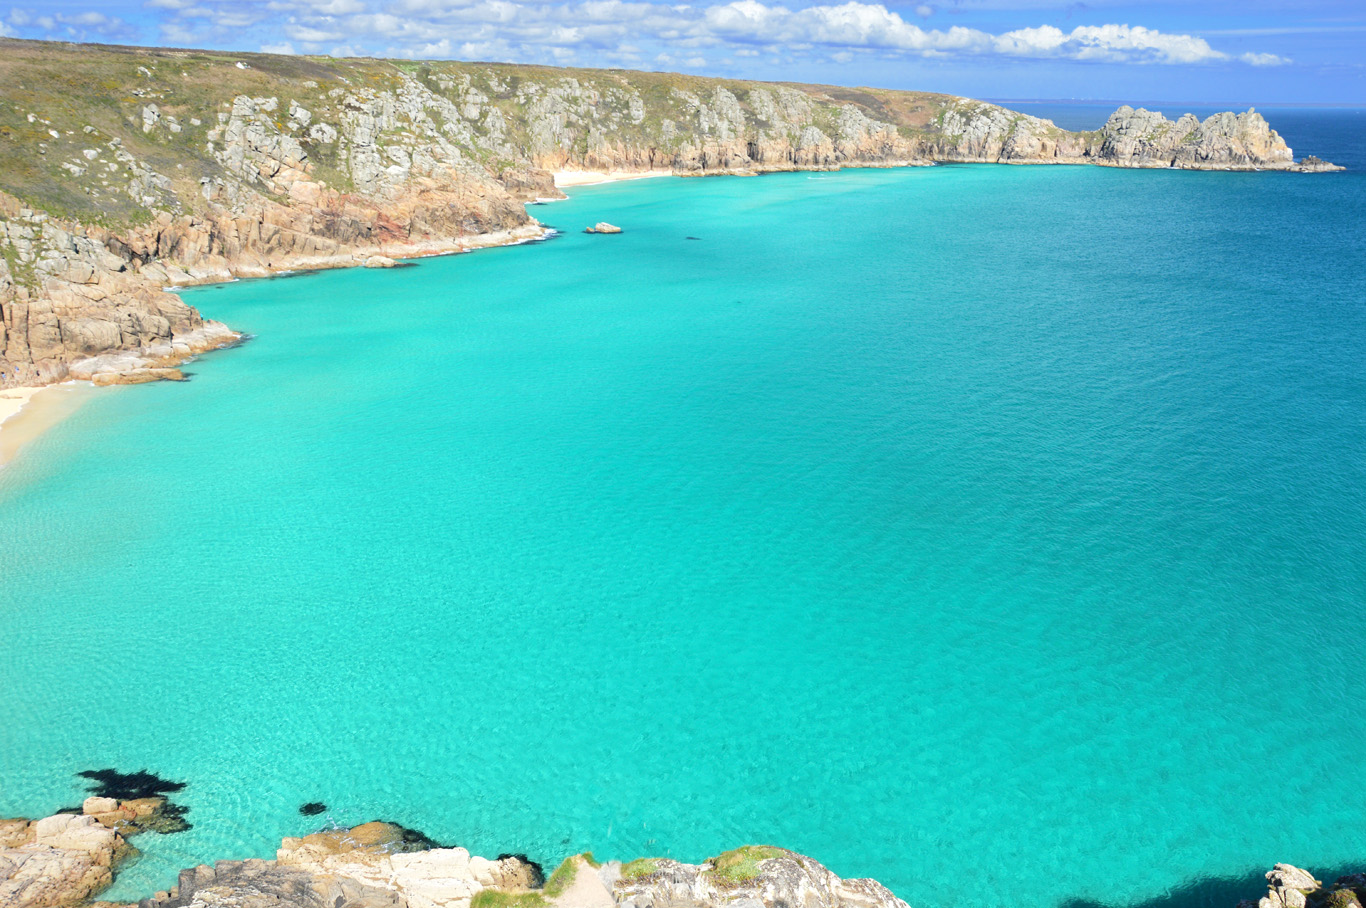   Cornwall - Melhores Praias no Reino Unido    veja mais  